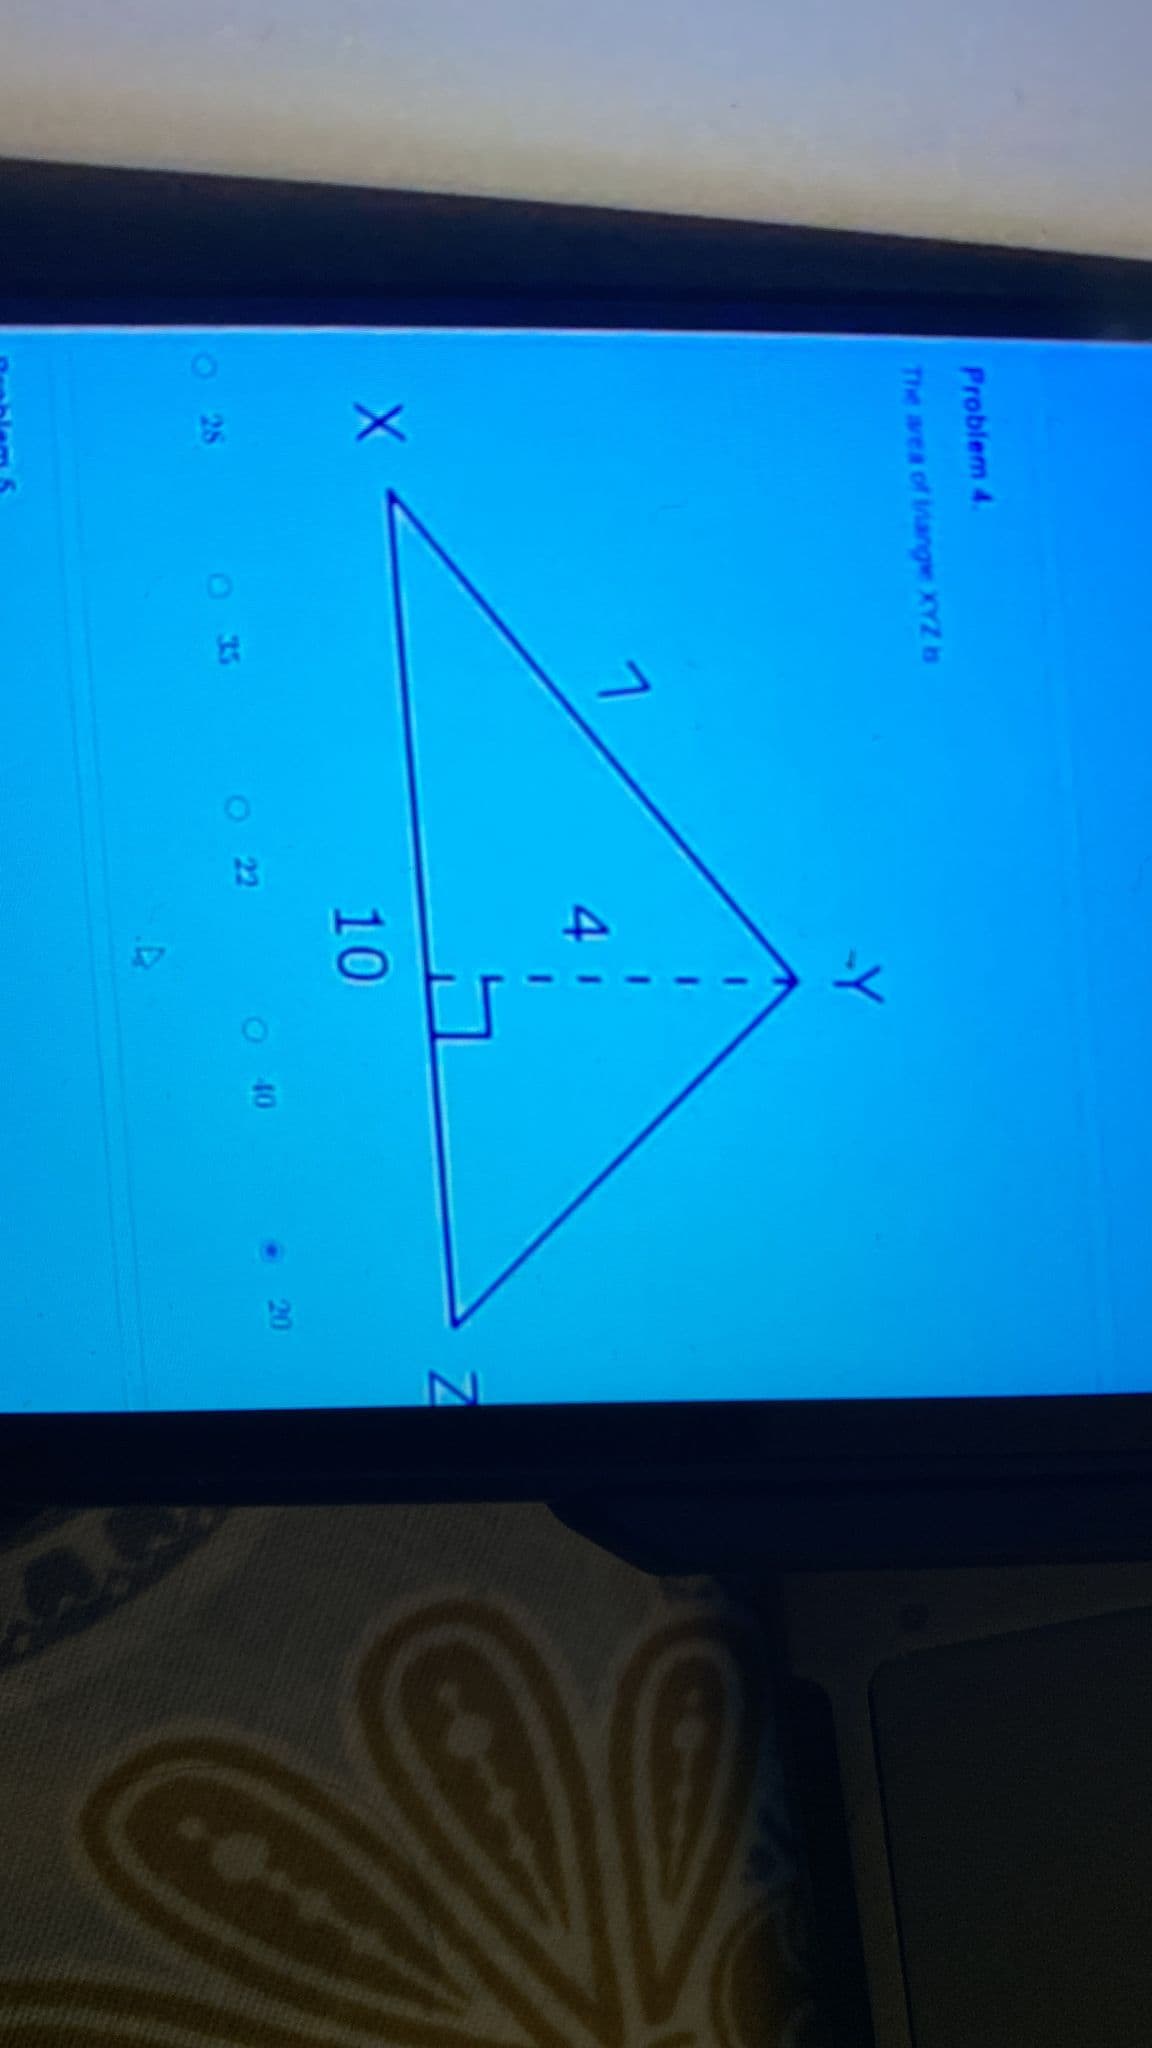 Problem 4.
The area of triangle XYZ
X
28
OK
7
O
022
-Y
10
4
40
20
Z